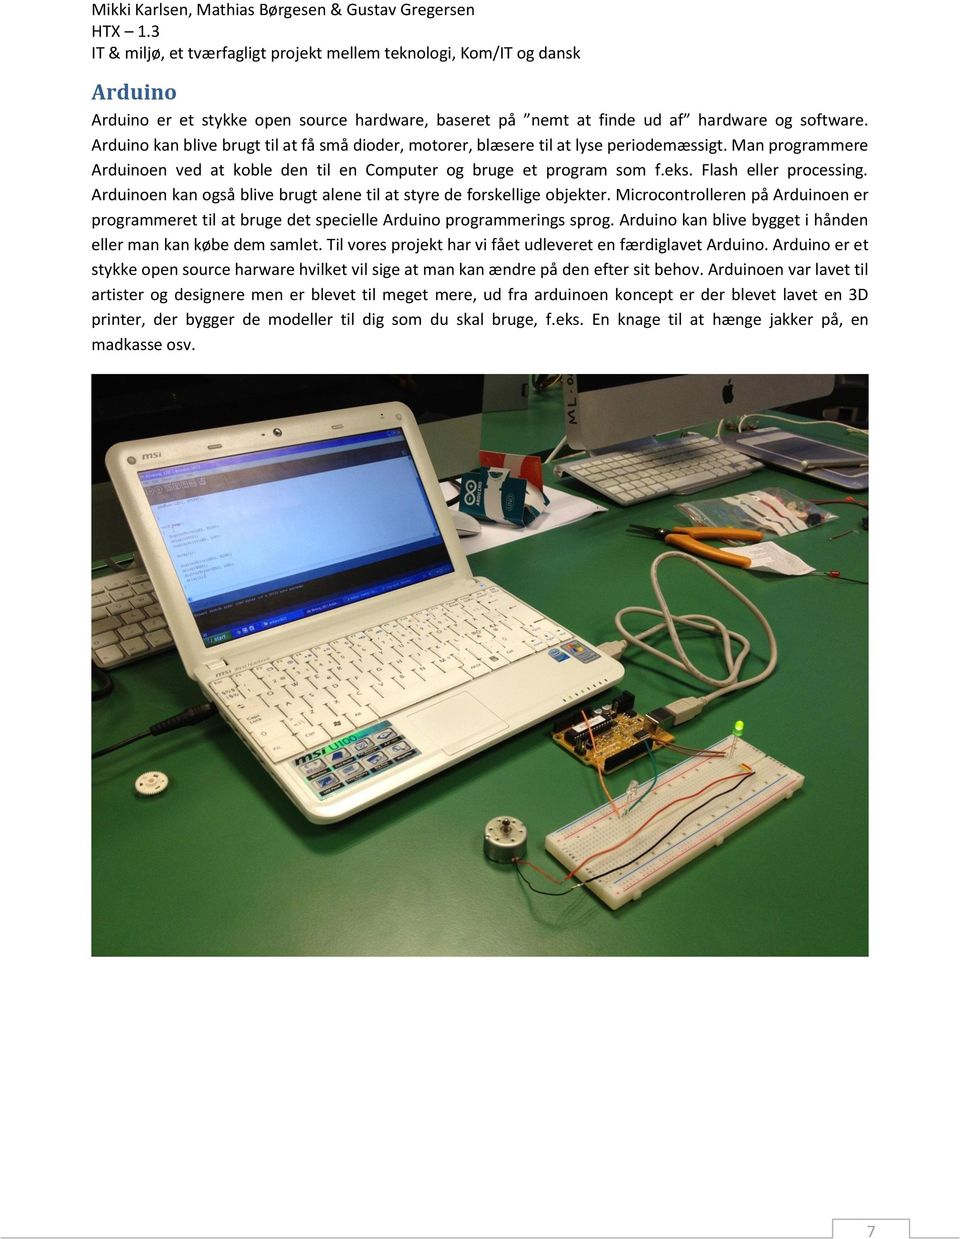 Microcontrolleren på Arduinoen er programmeret til at bruge det specielle Arduino programmerings sprog. Arduino kan blive bygget i hånden eller man kan købe dem samlet.